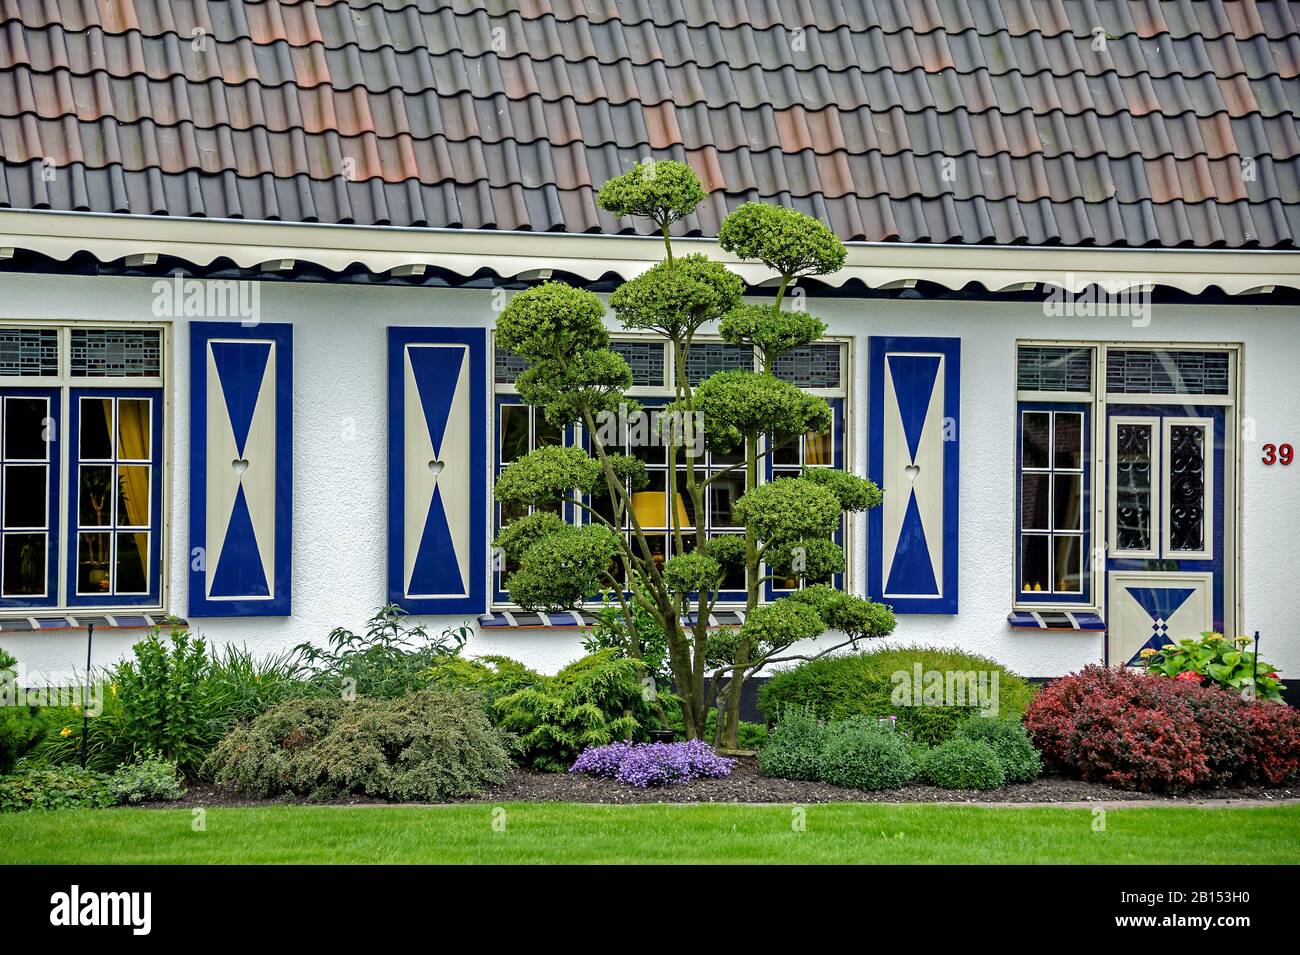 Houx japonais (Ilex crenata), dans un jardin en façade, Pays-Bas Banque D'Images